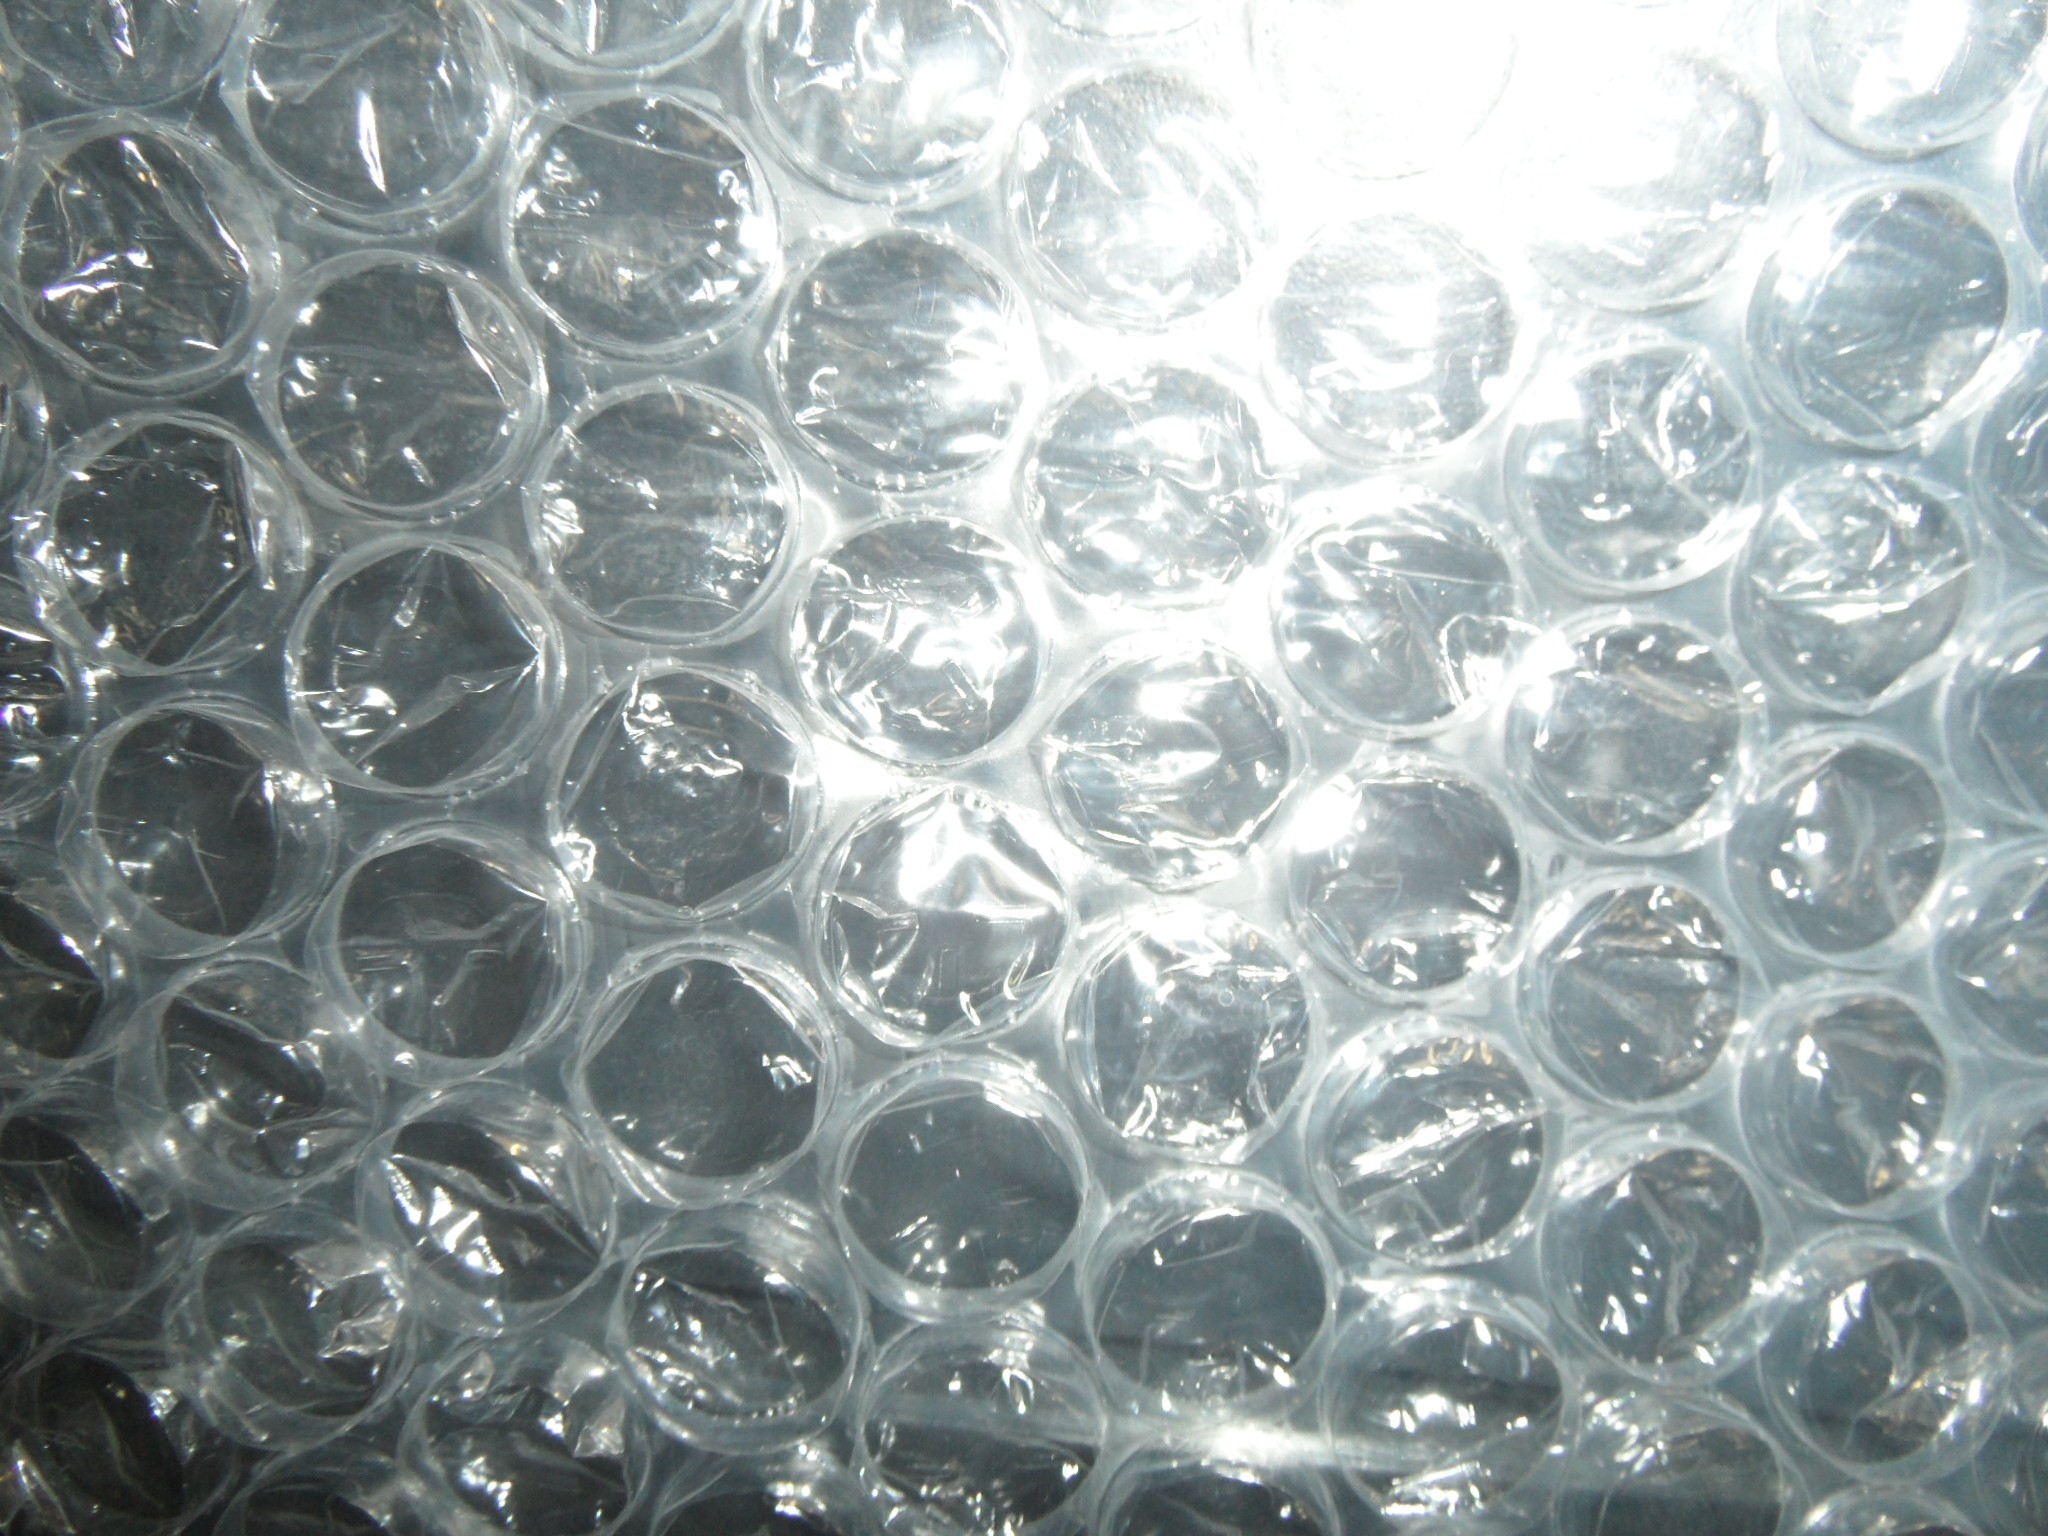 Rouleau de film bulle d'air 1m x 50m